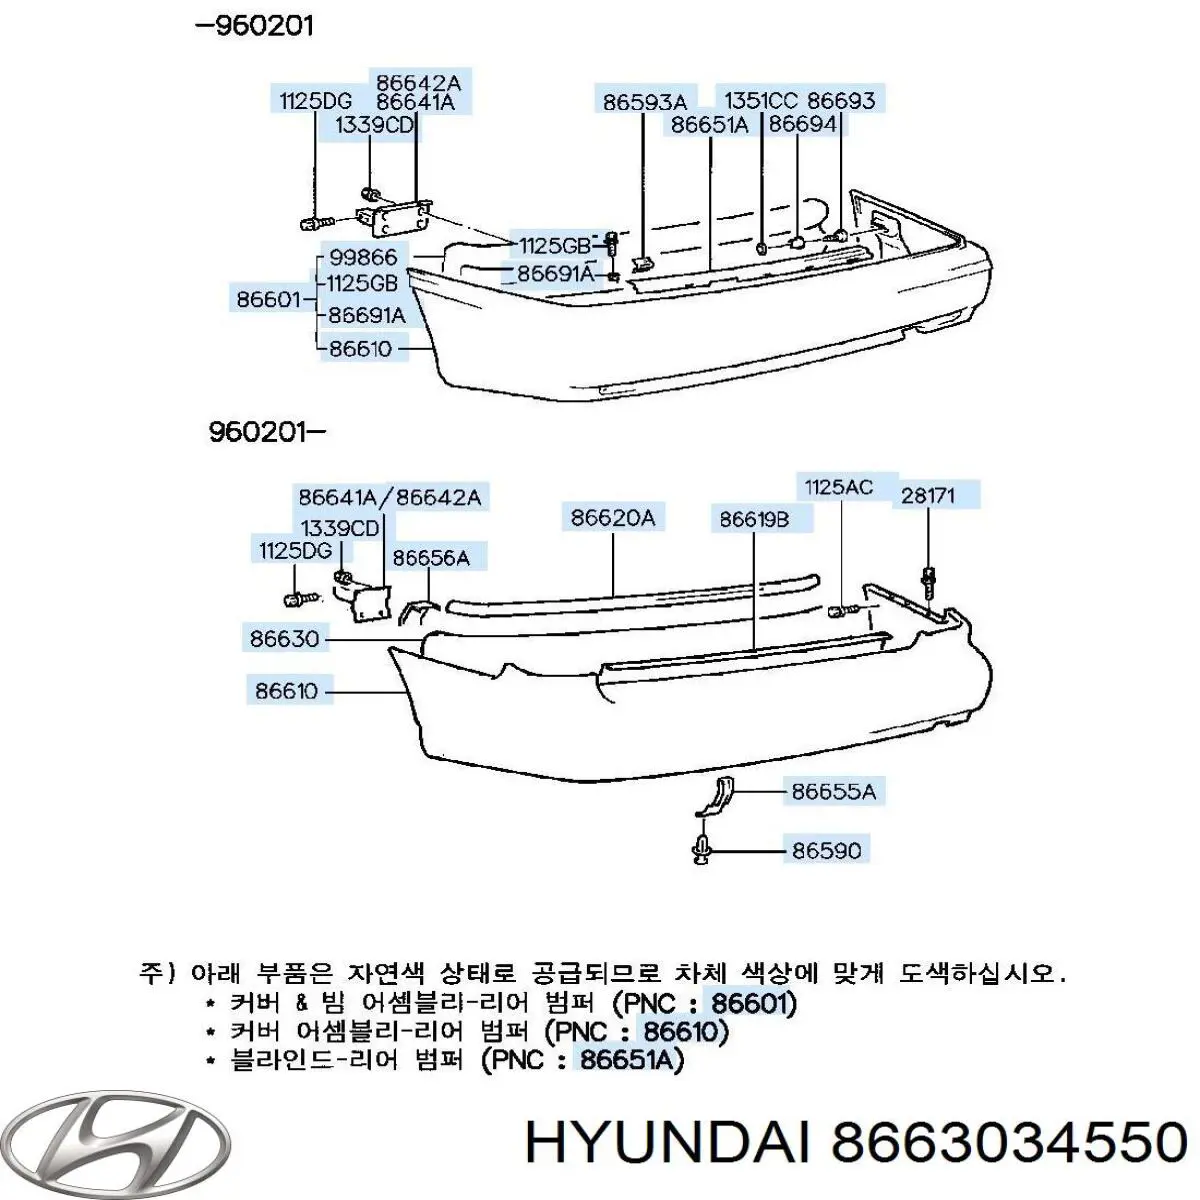 Усилитель заднего бампера Hyundai Sonata (Хундай Соната)